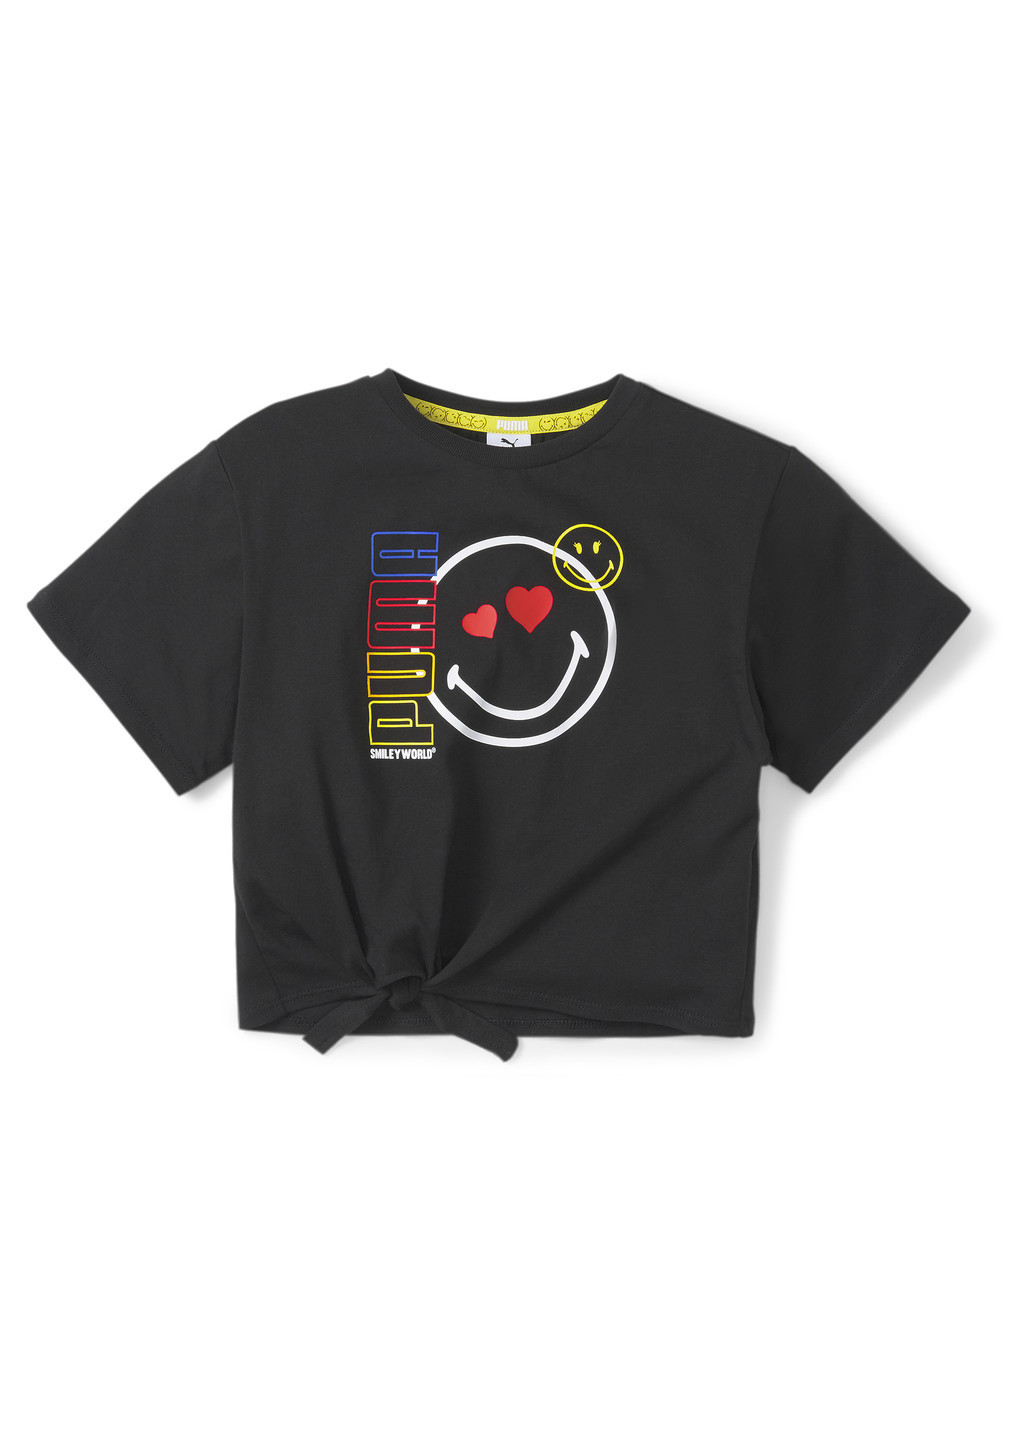 Детская футболка x SMILEY WORLD Kids' Tee Puma однотонная чёрная спортивная полиэстер, хлопок